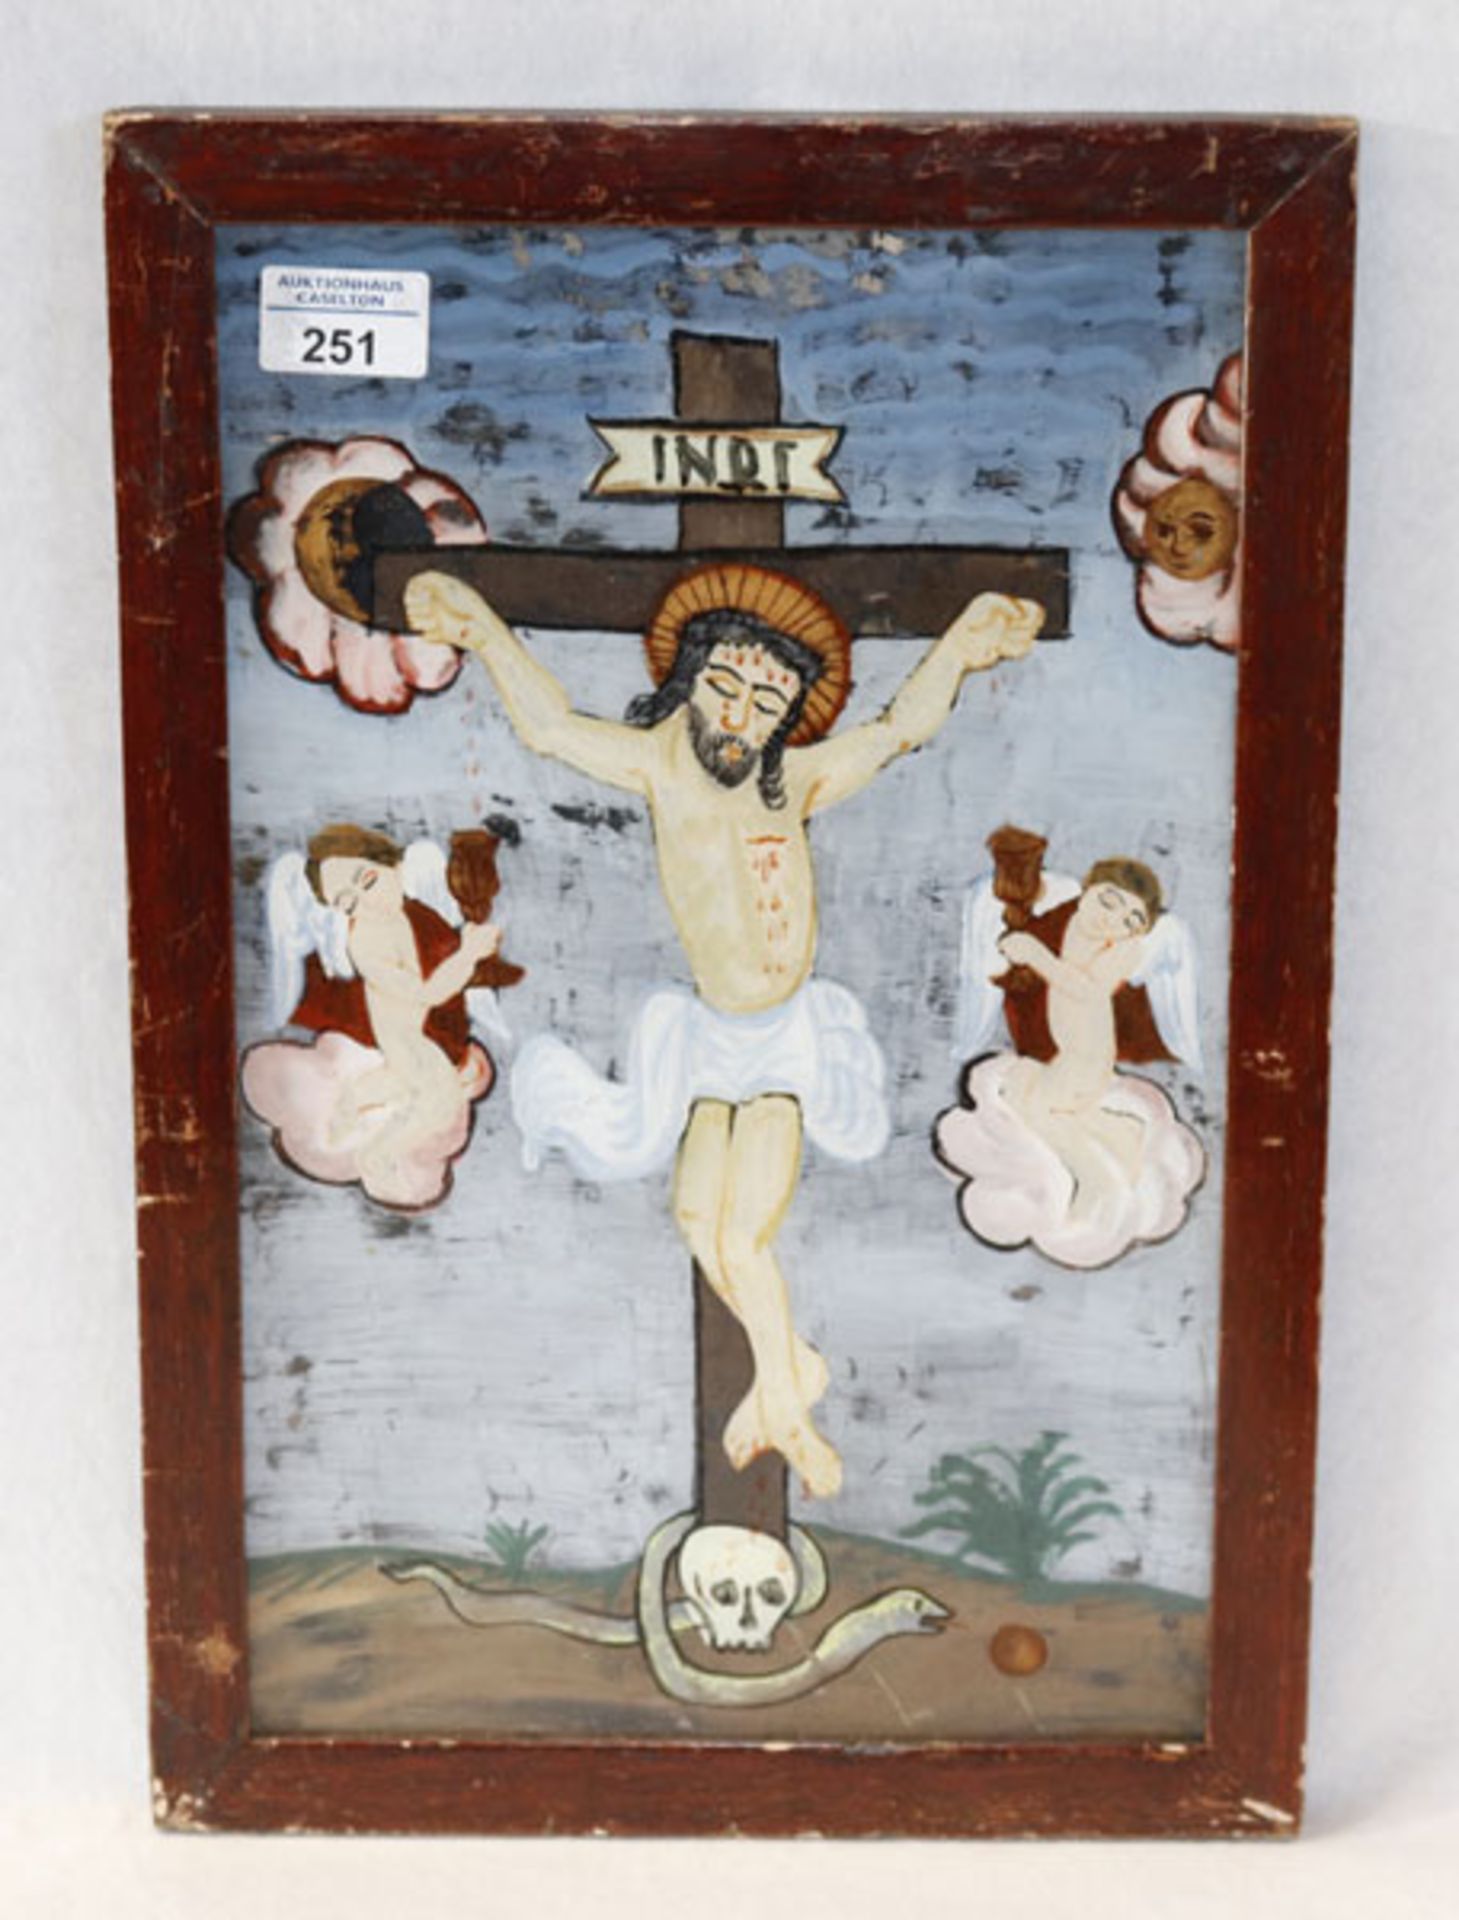 Hinterglasbild 'Jesus am Kreuz', ev. Böhmen, Bild und Rahmen beschädigt, incl. Rahmen 42 cm x 28 cm